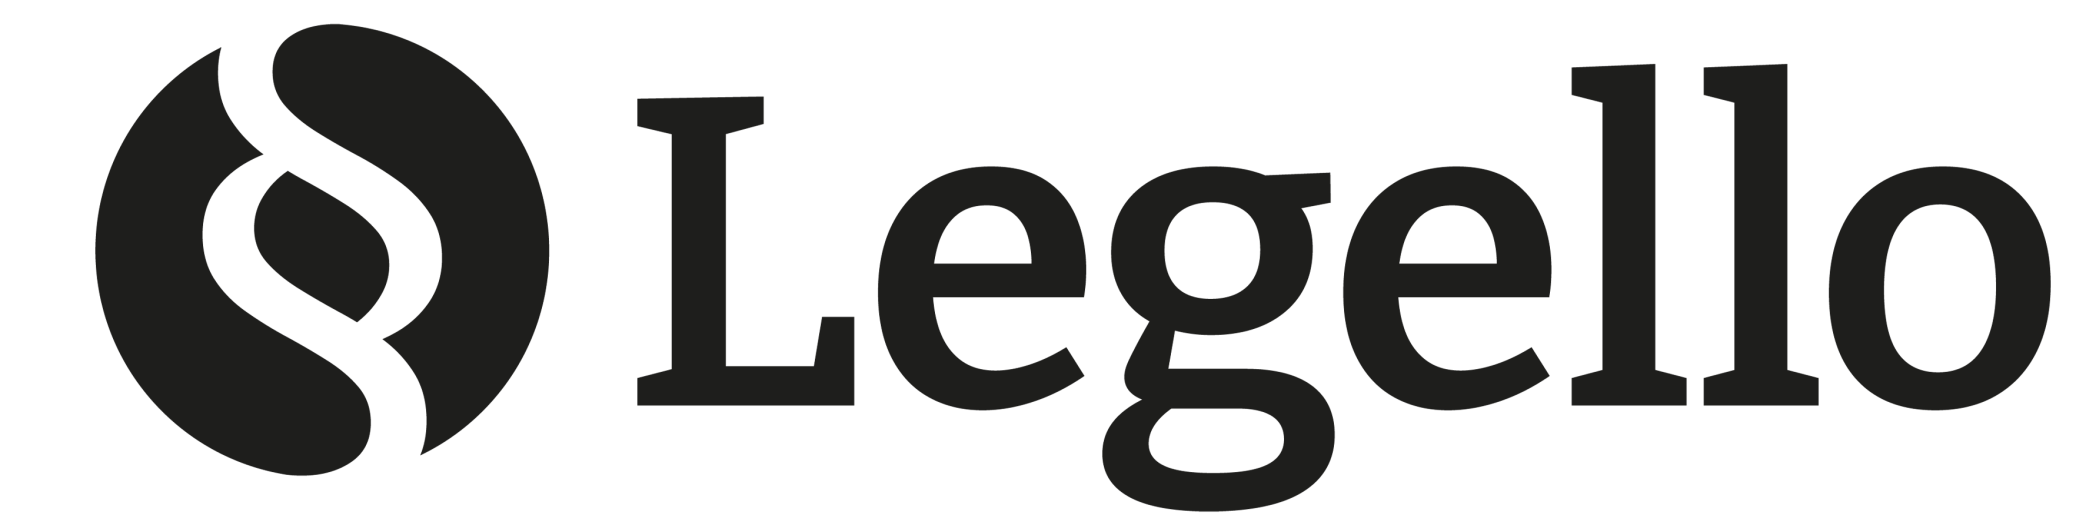 Legello_Logotype_black-kl